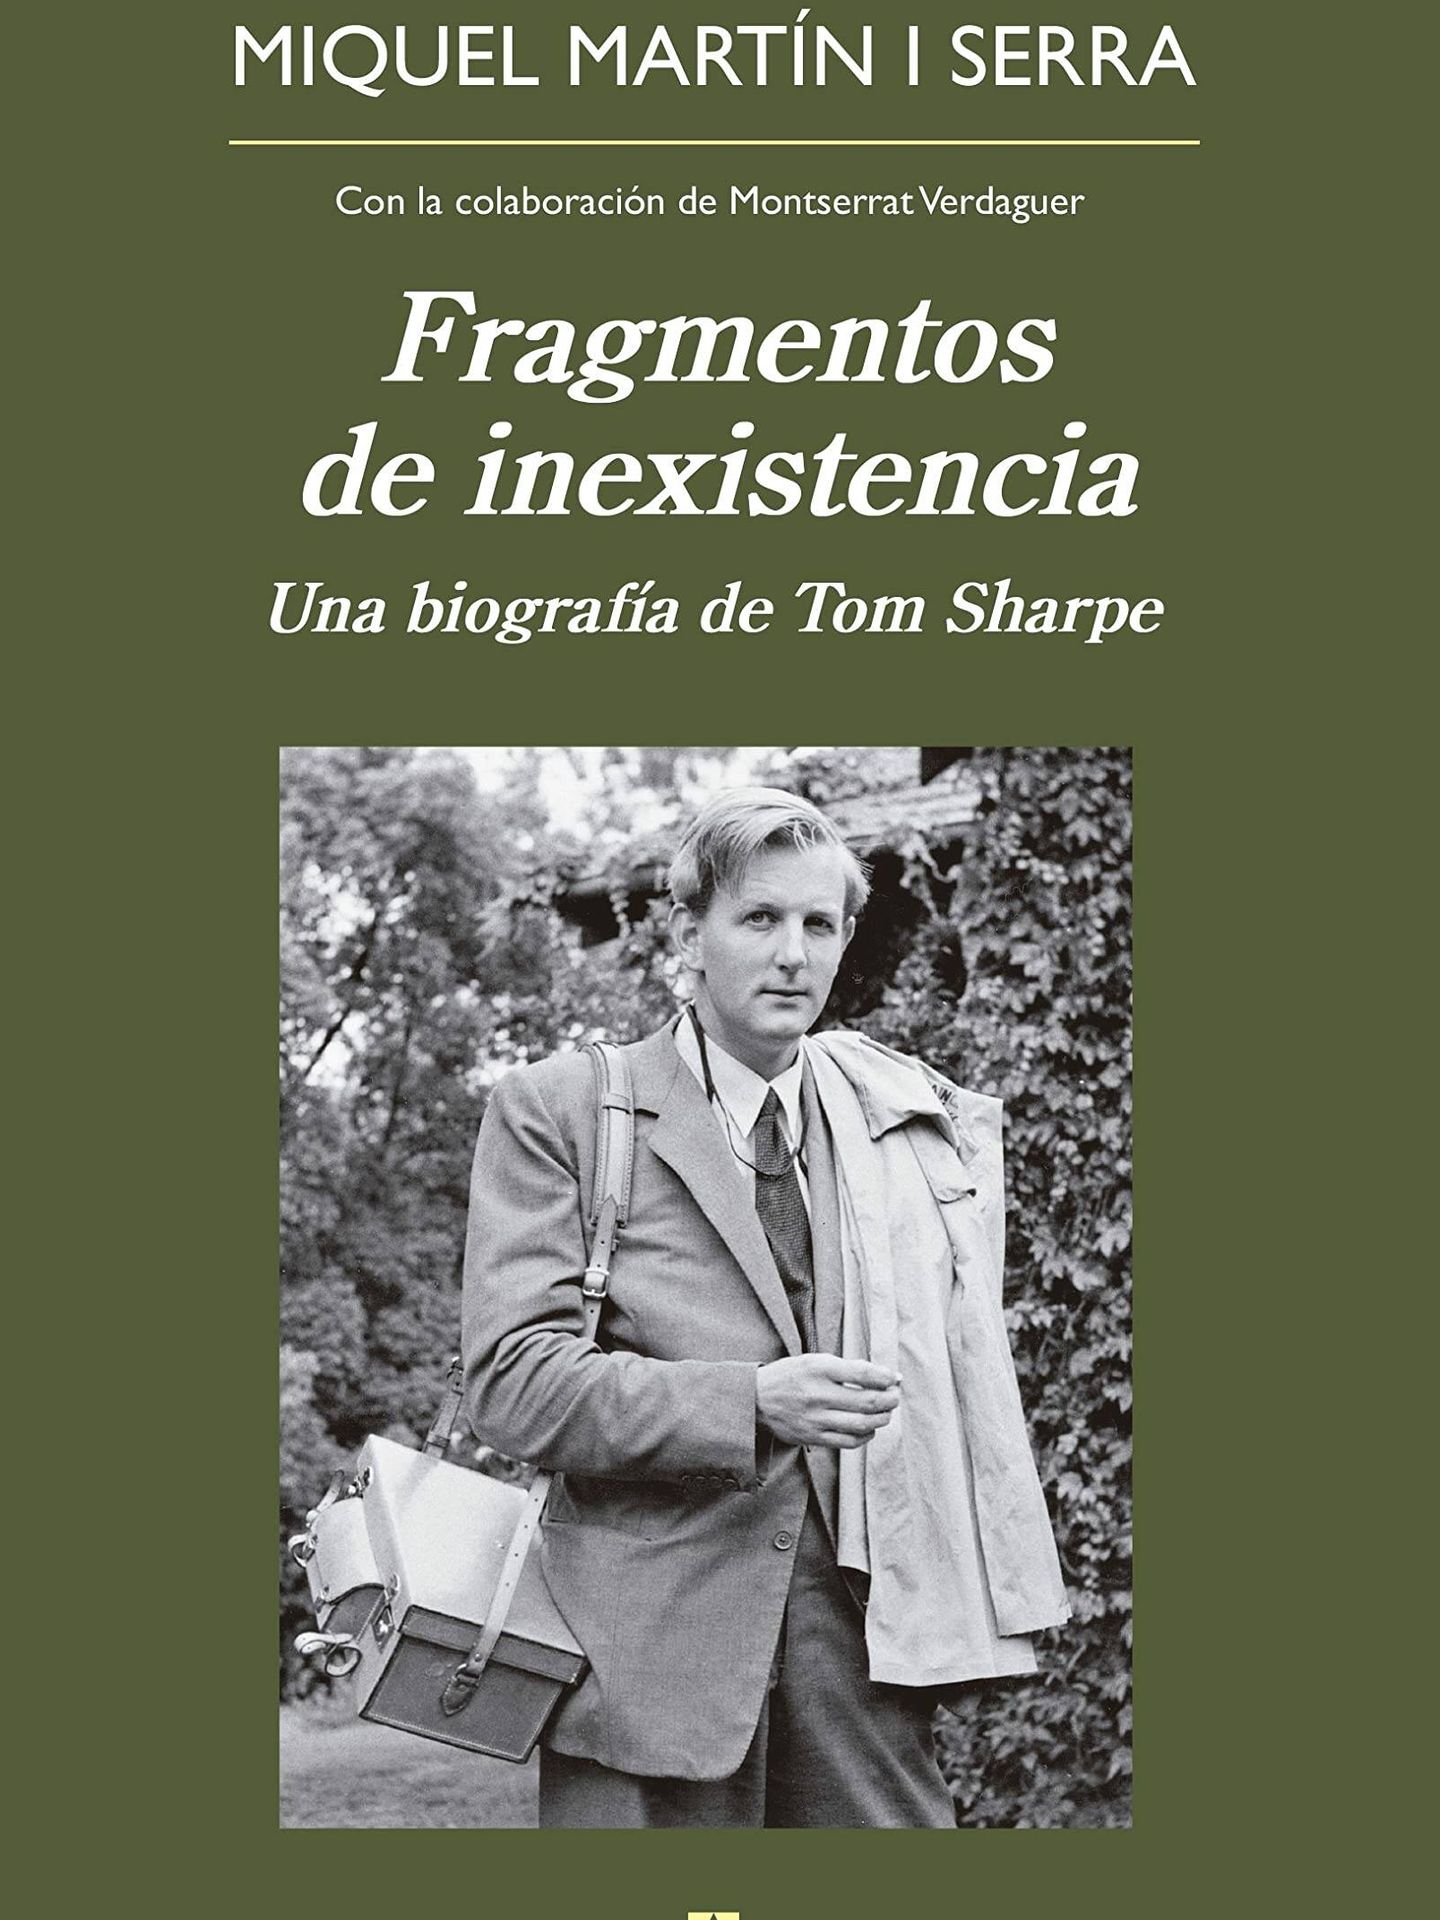 Portada de 'Fragmentos de inexistencia', la biografía de Tom Sharpe escrita por Miquel Martín.